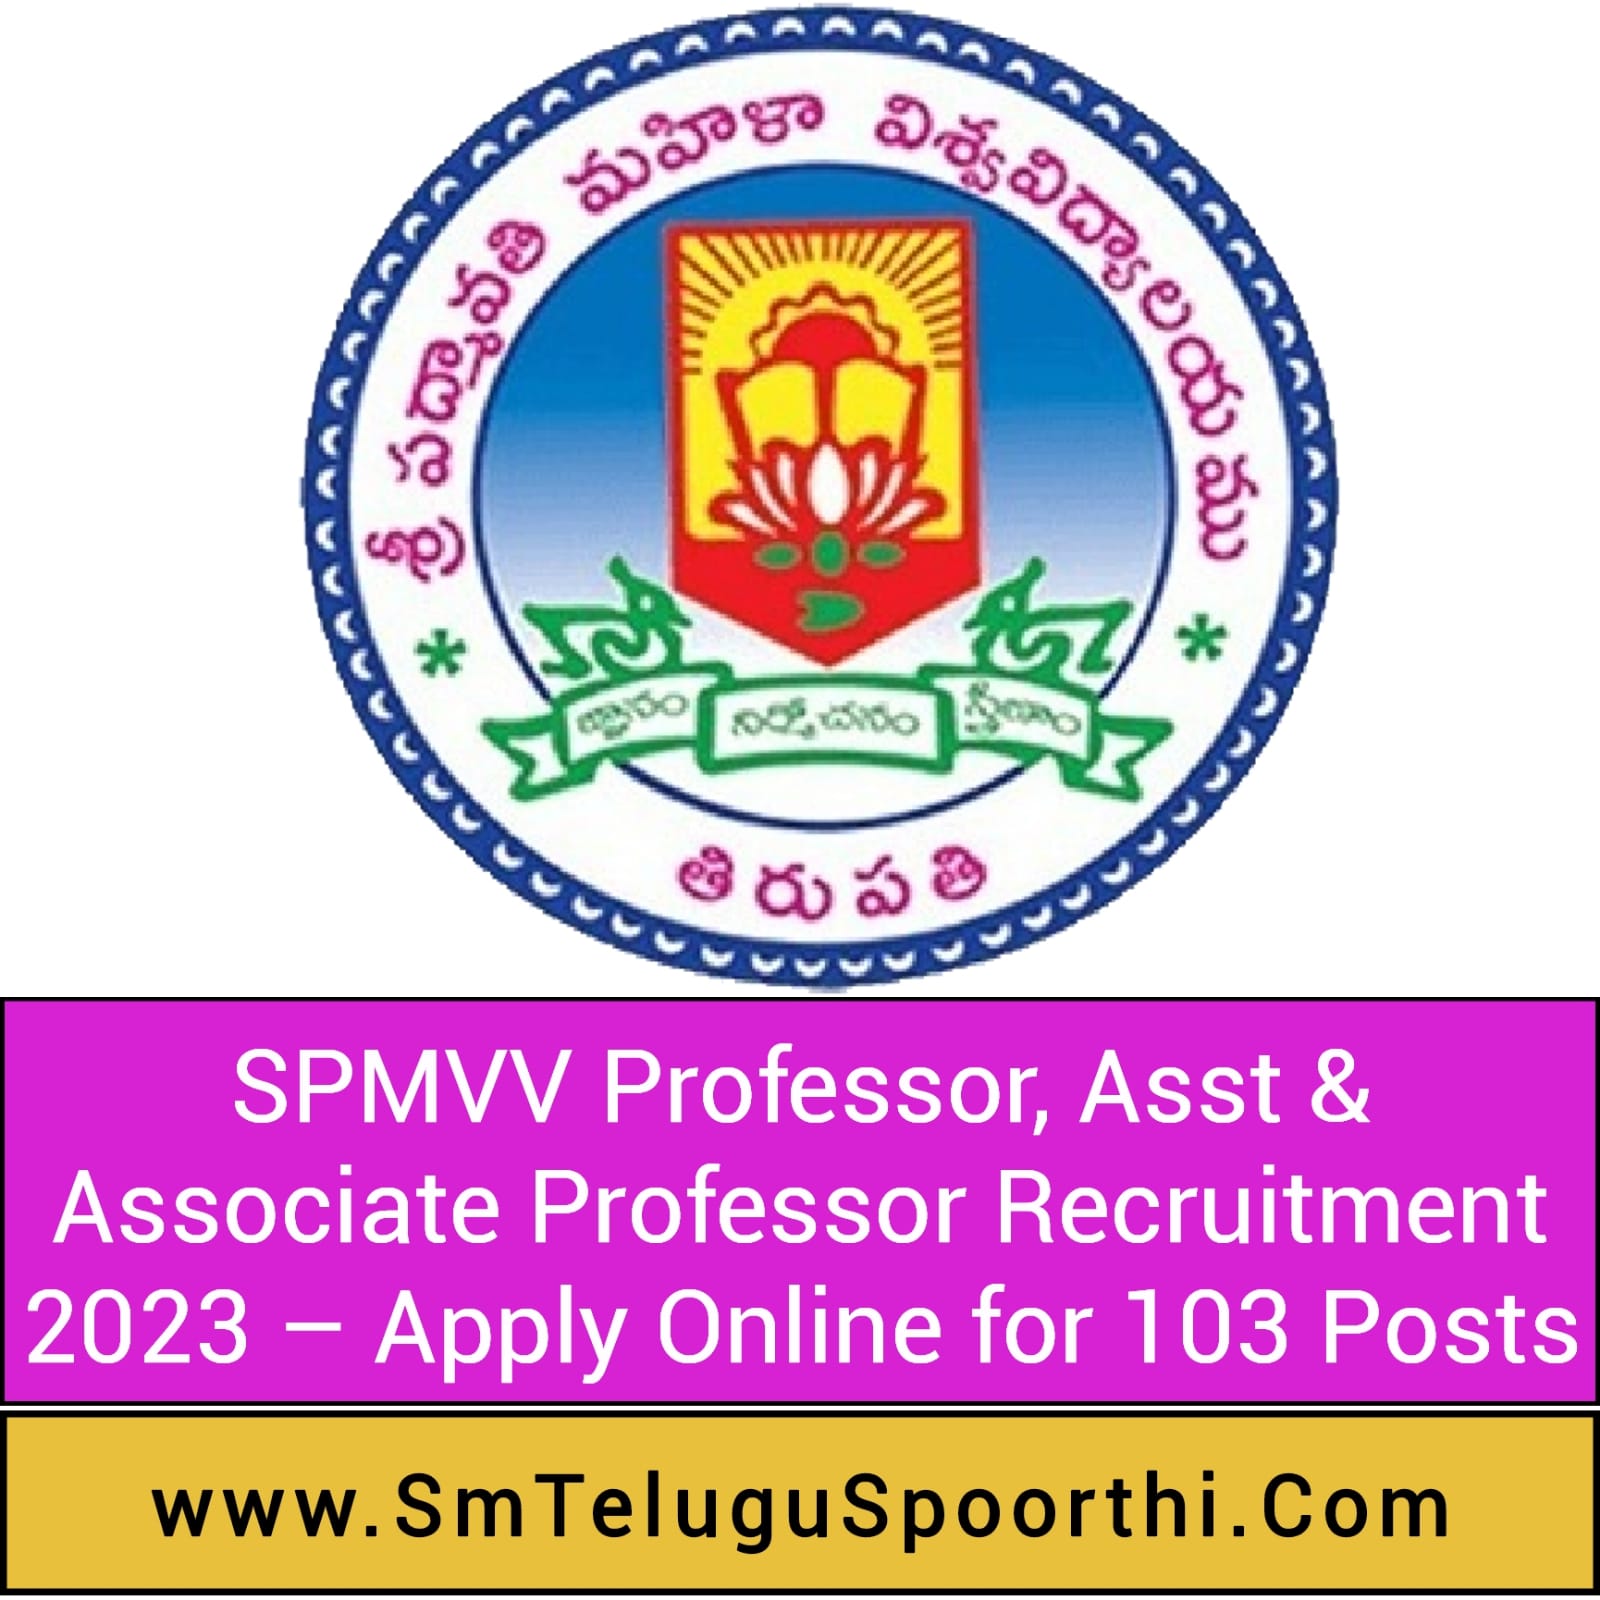 SPMVV Professor, Asst & Associate Professor Recruitment 2023